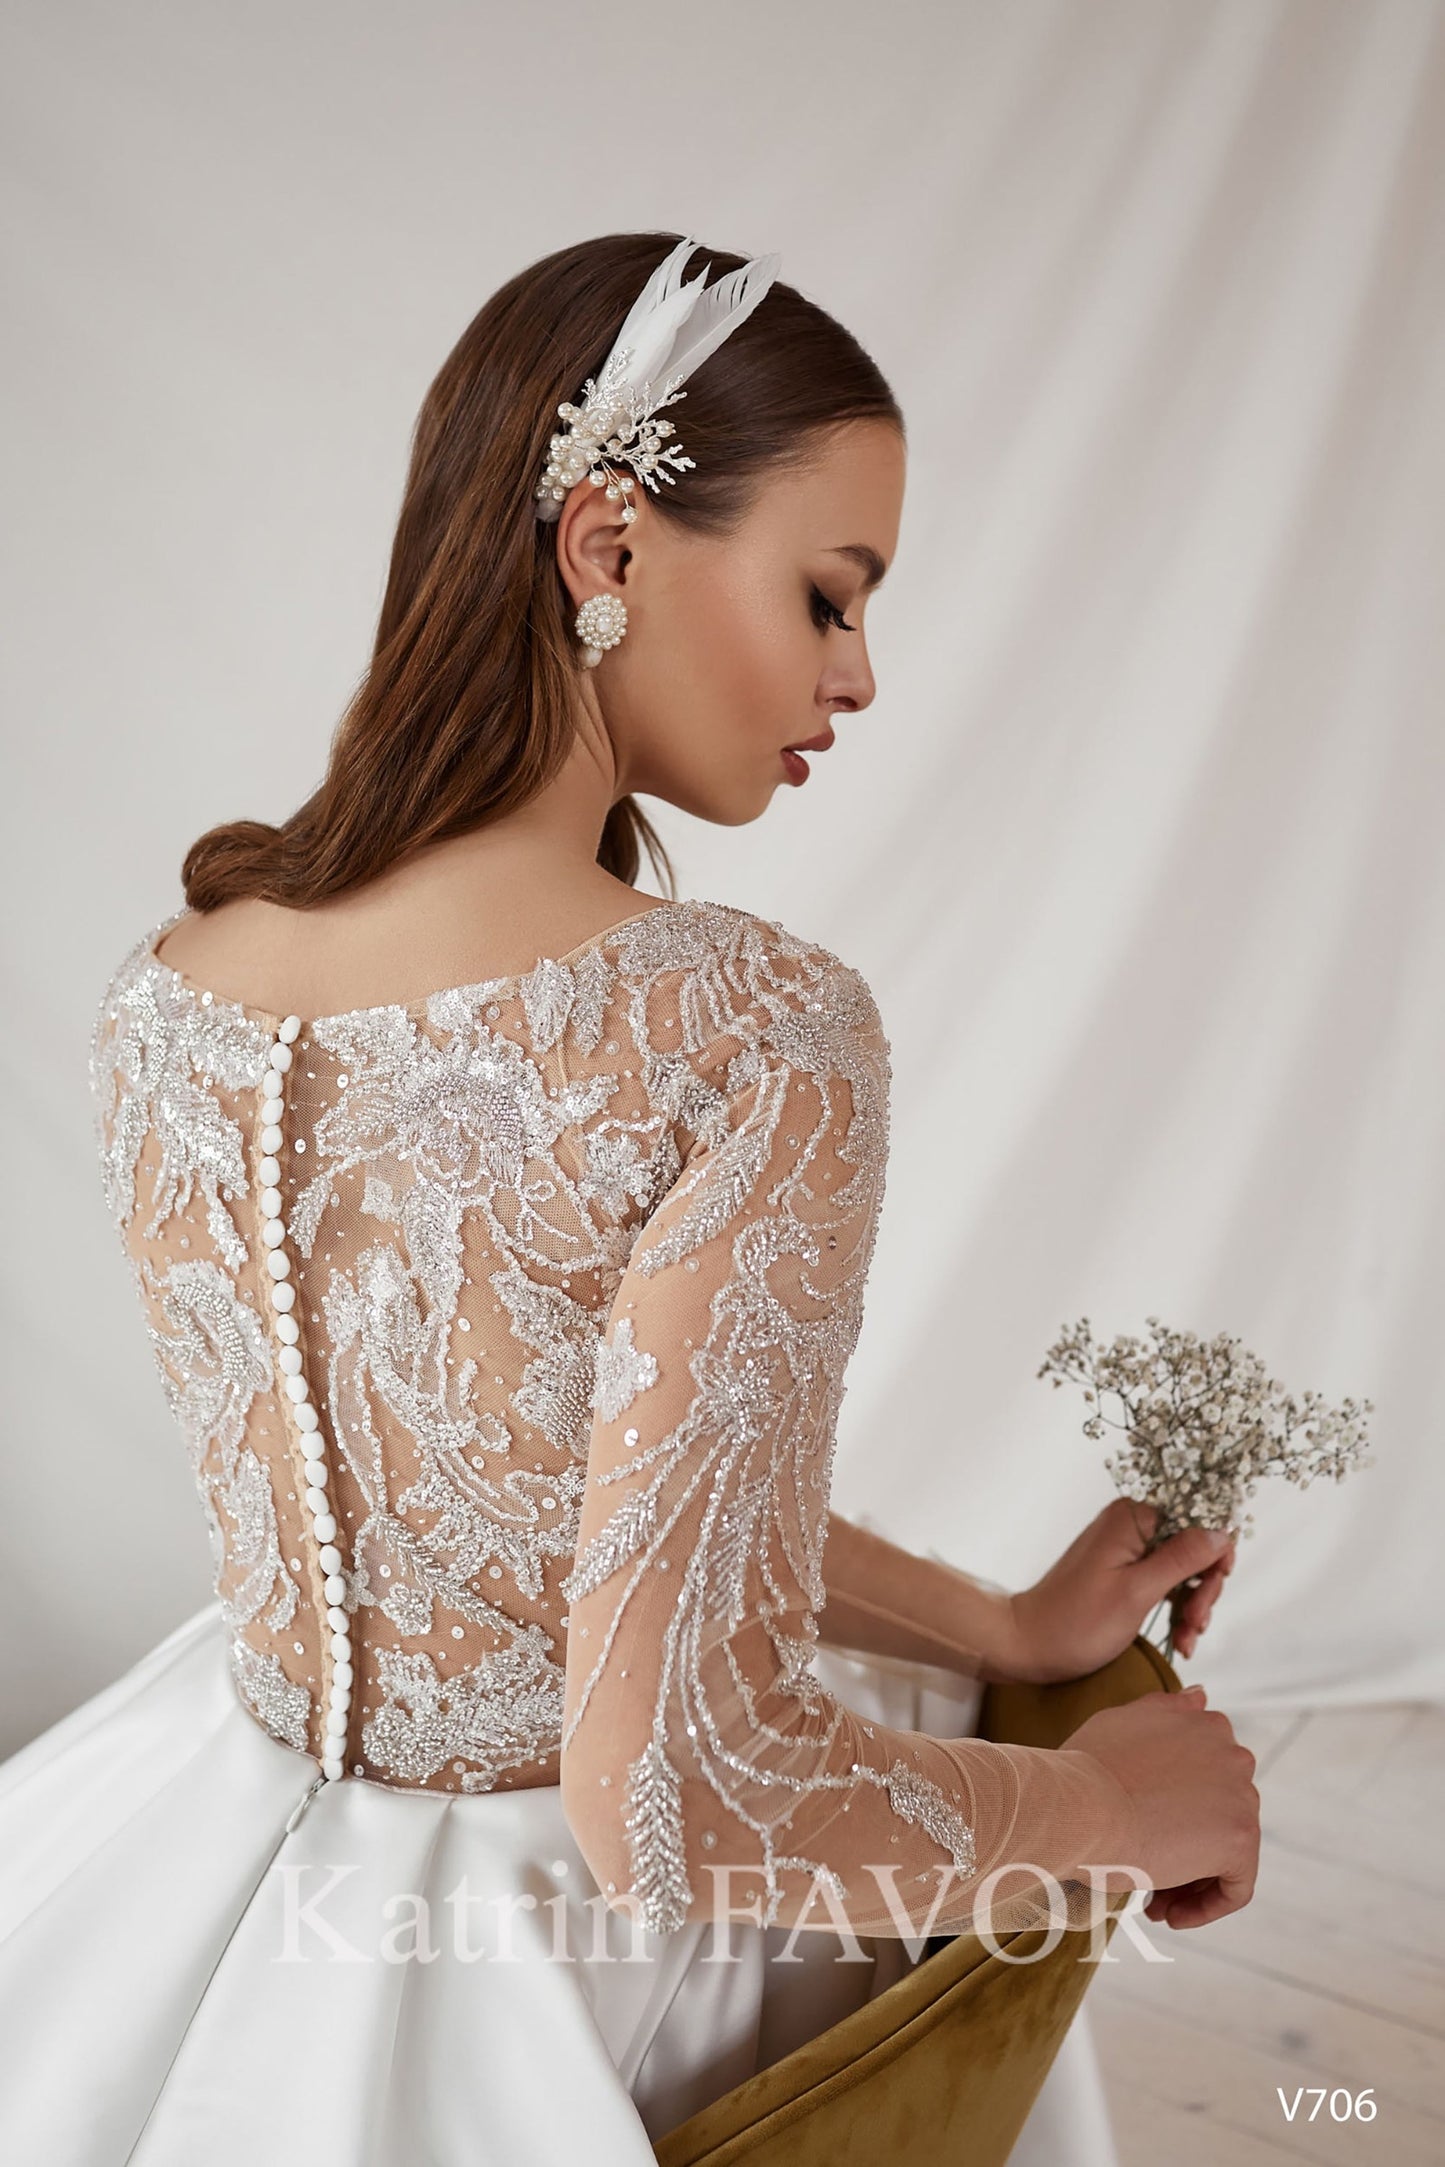 KatrinFAVORboutique-Embroidered back satin a-line wedding dress